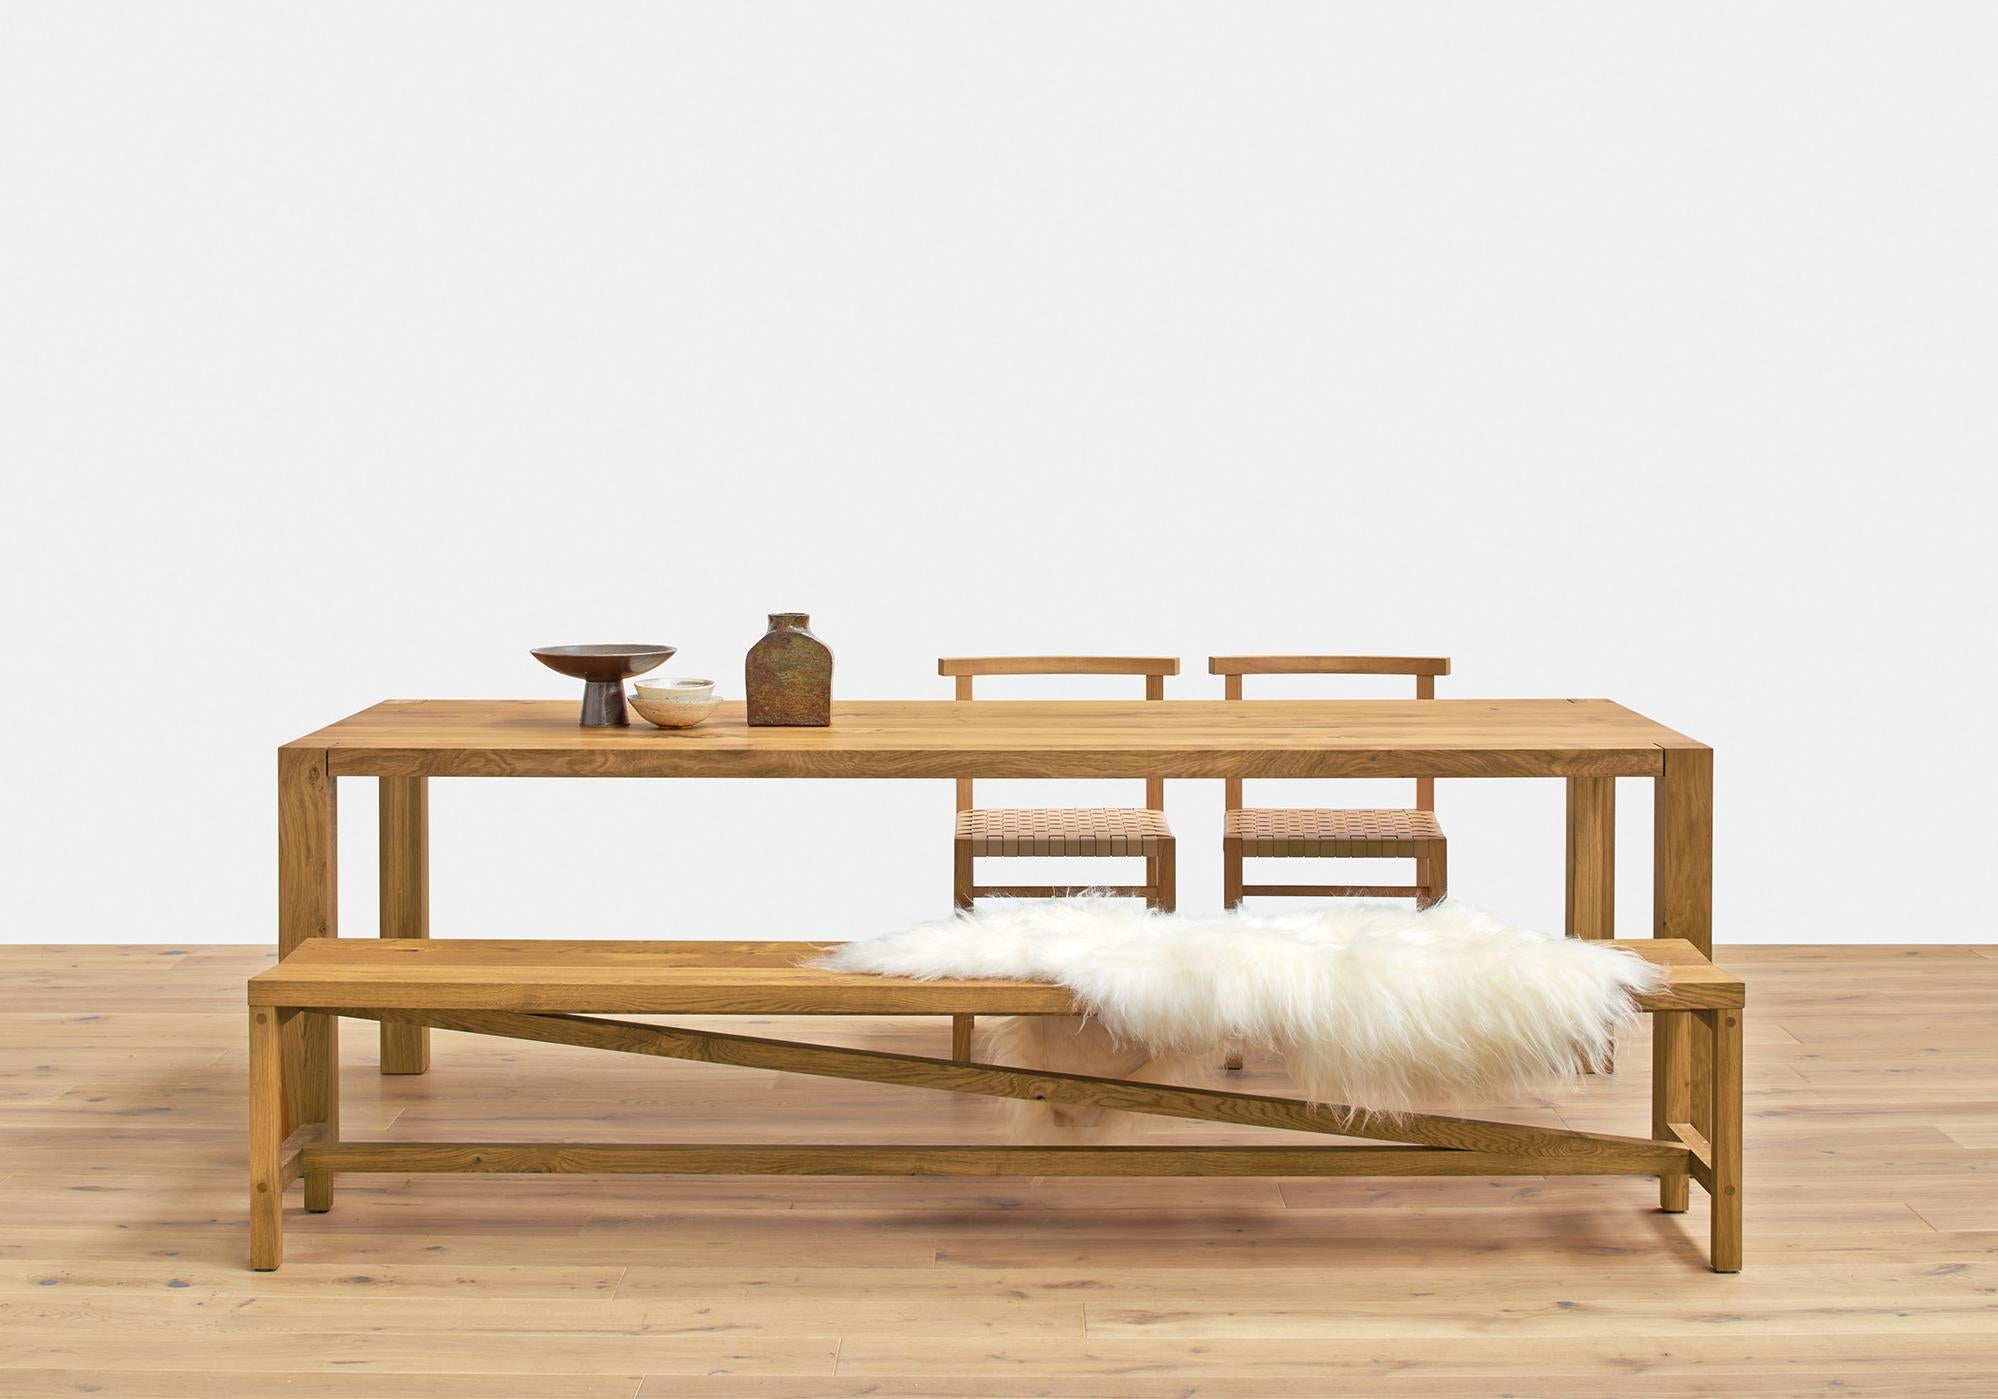 Le banc Sitz reflète le langage du design de la table Platz et constitue un complément naturel. La barre diagonale caractéristique domine le caractère du banc en bois massif, soulignant la construction décontractée et stable. Le cadre est mortaisé